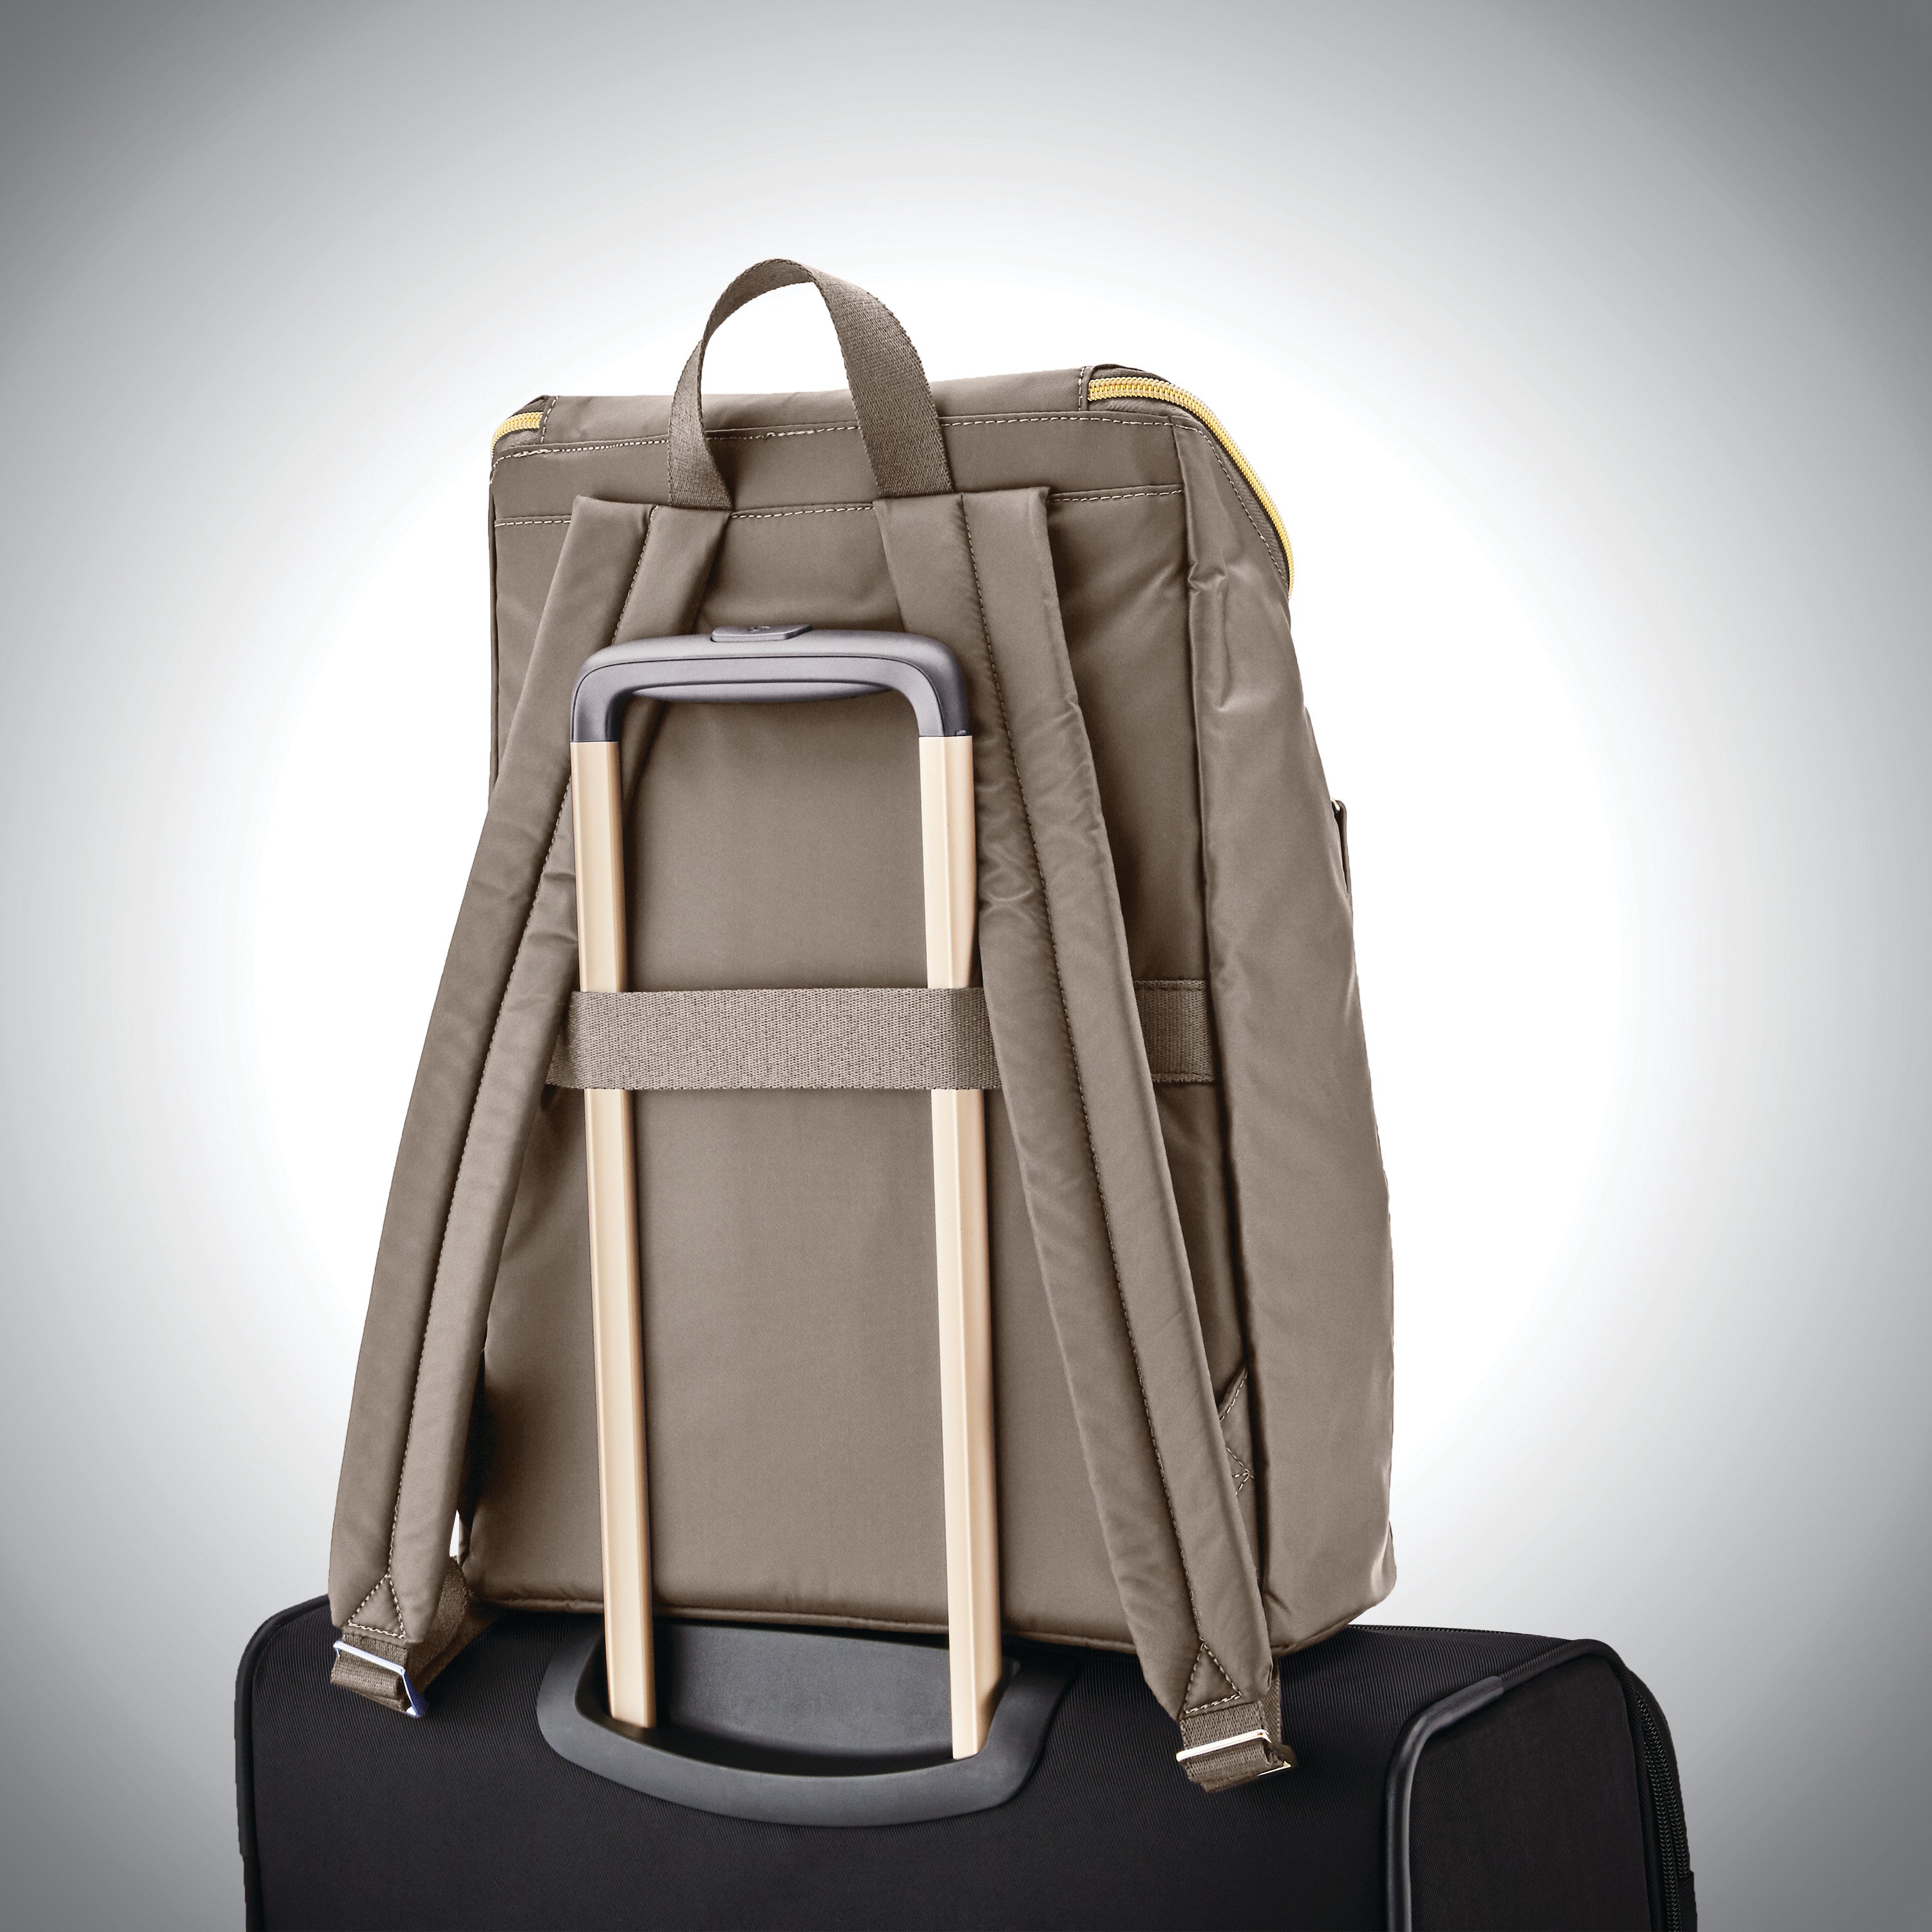 Samsonite Women's Mobile Solution Business Travel - Deluxe Backpack ...